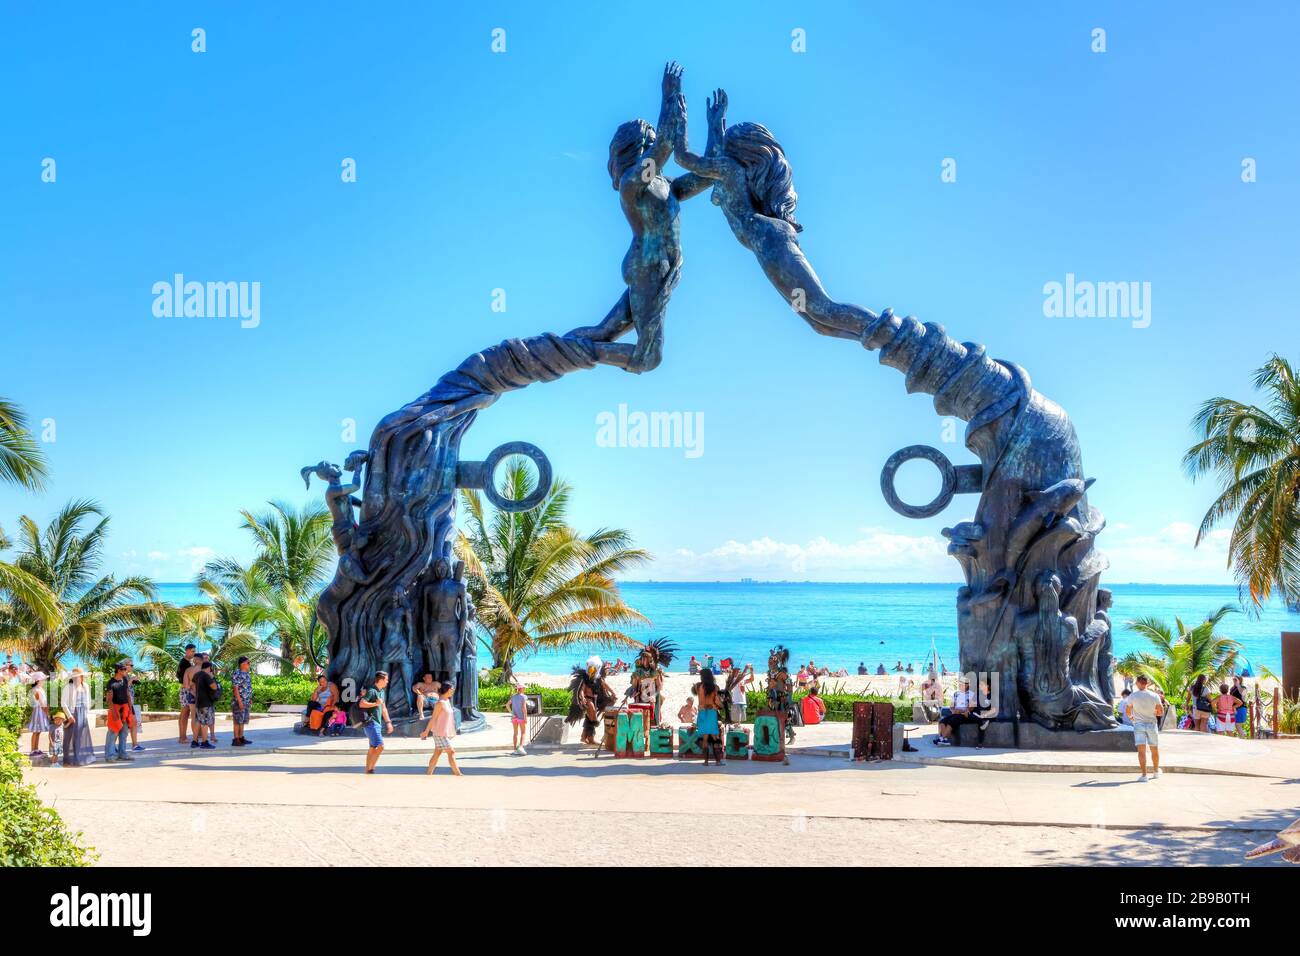 PLAYA DEL CARMEN, MEXIQUE - DEC. 26, 2019: Les visiteurs se mêlent sur la plage du parc Fundadores à Playa del Carmen sur la côte des Caraïbes de la Riviera Maya avec p Banque D'Images